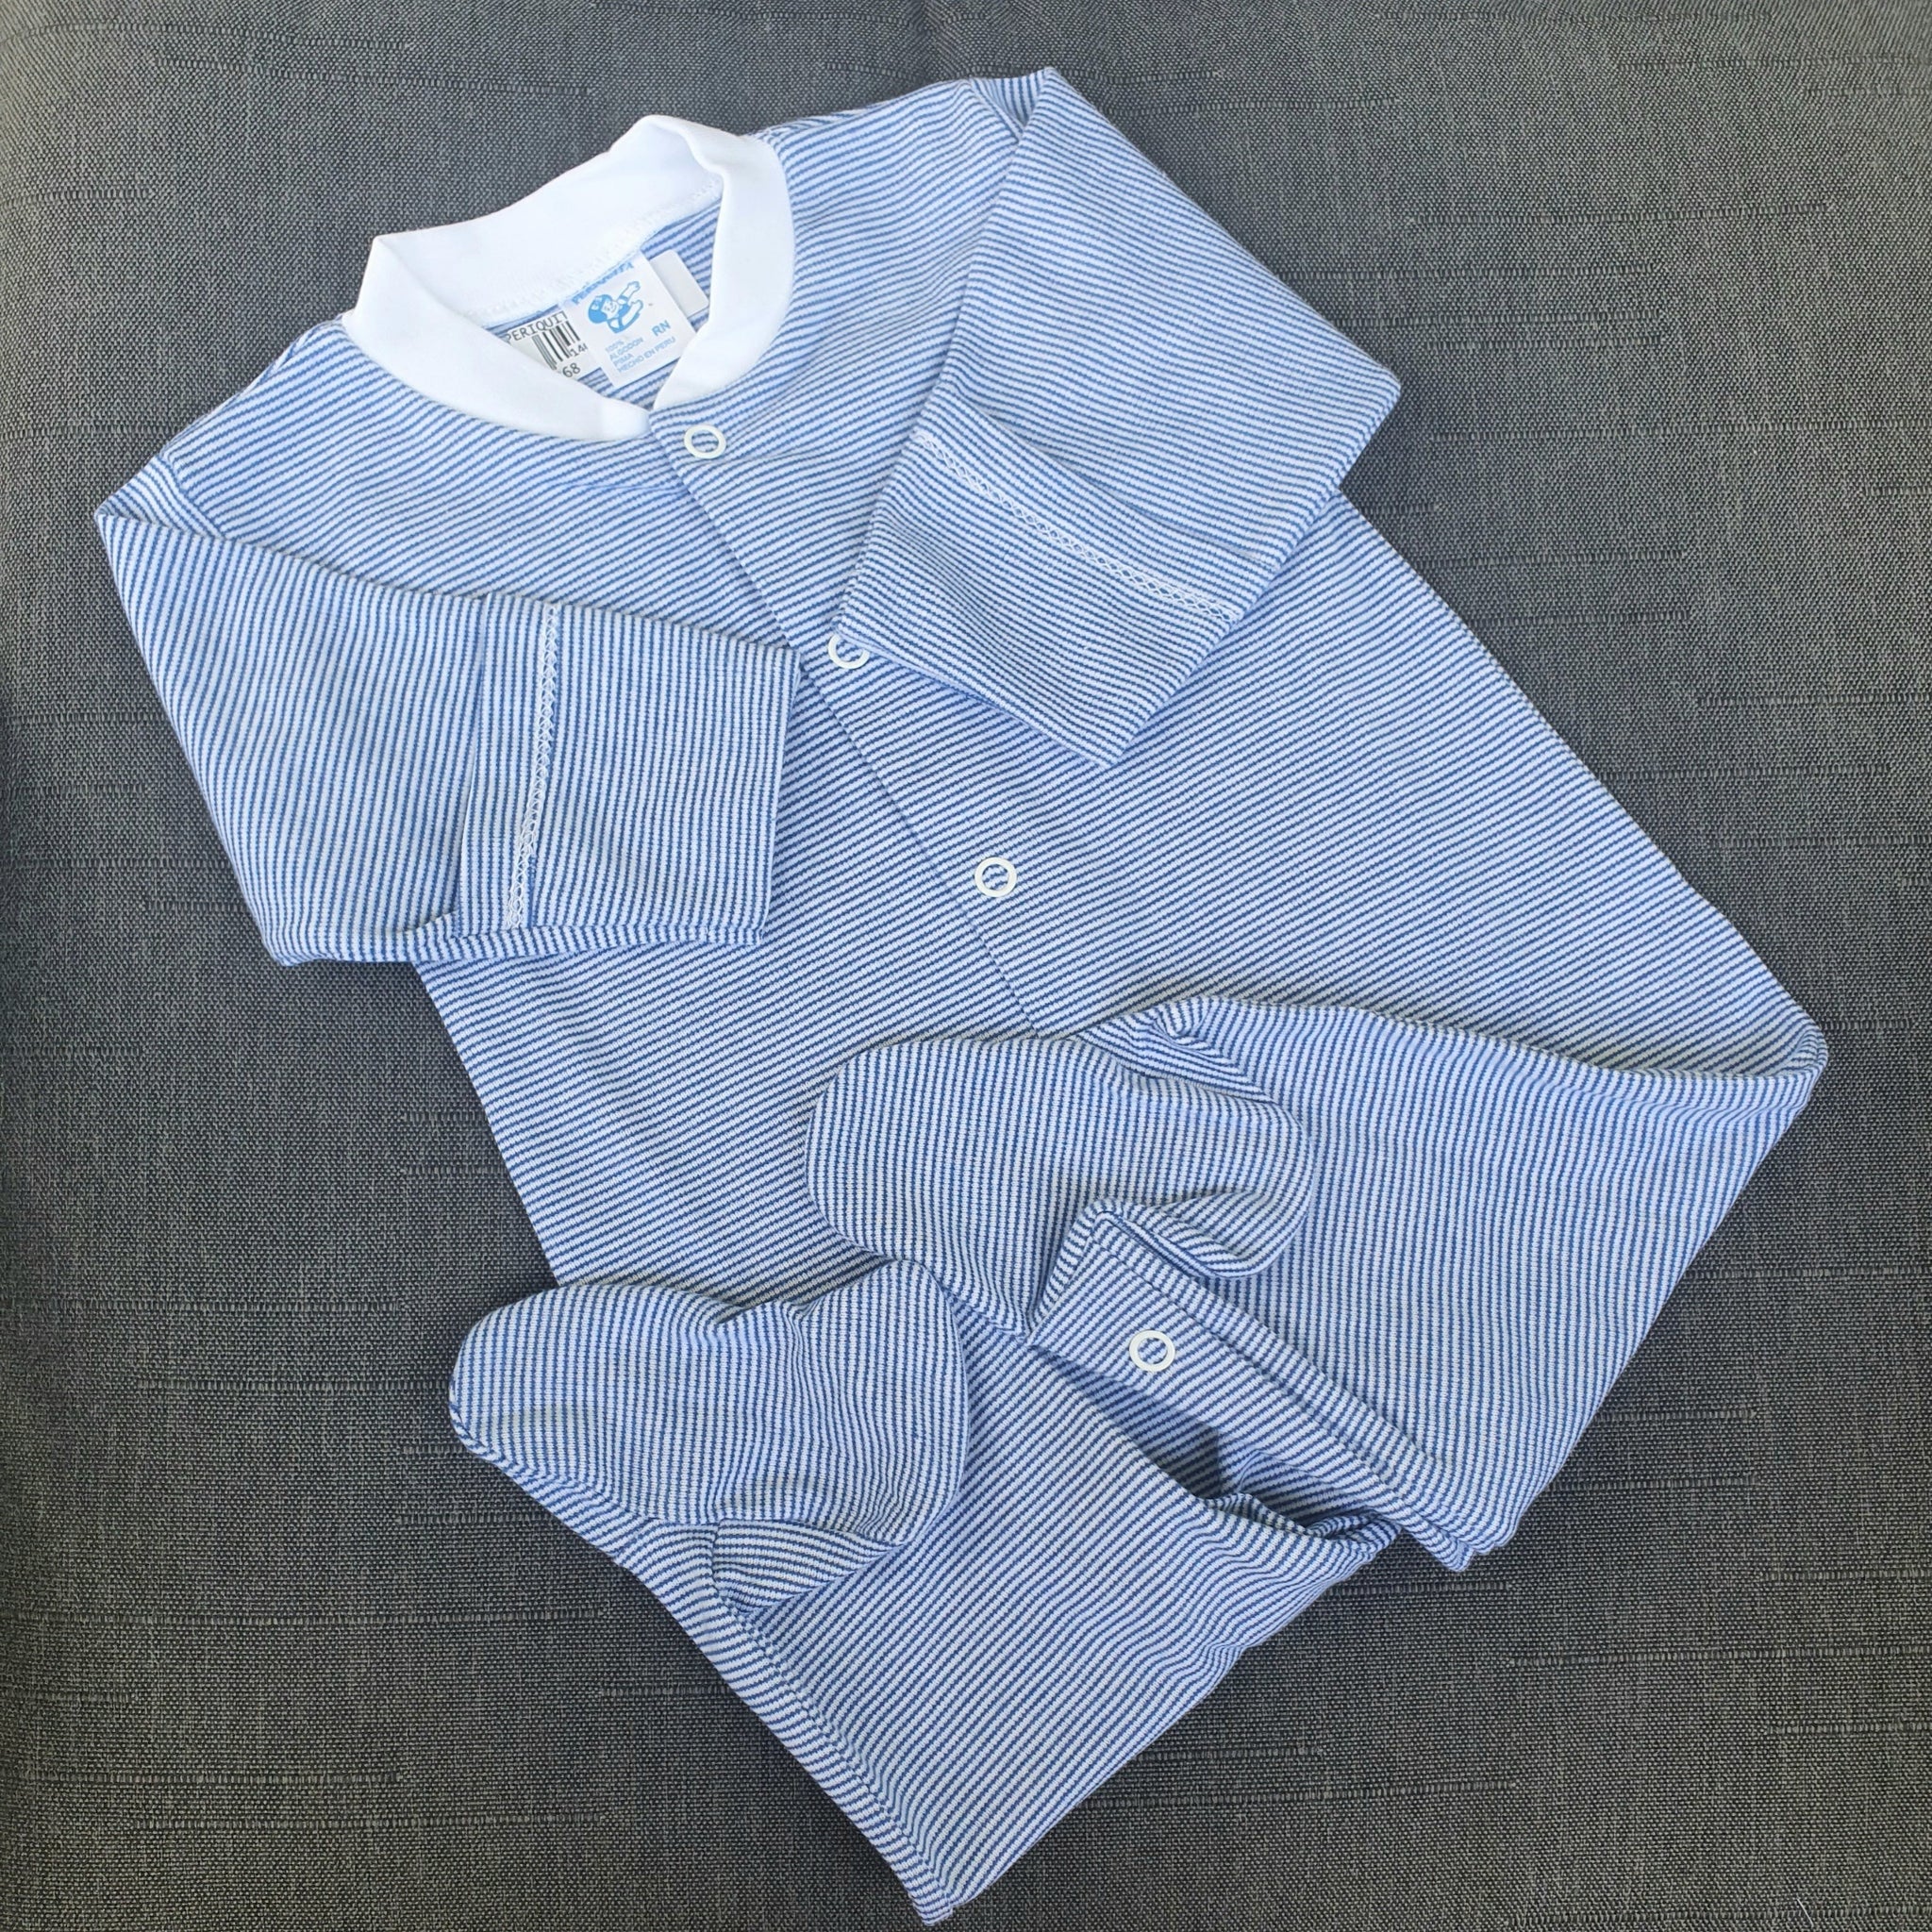 Pijama algodón pima rayas azules y blancas